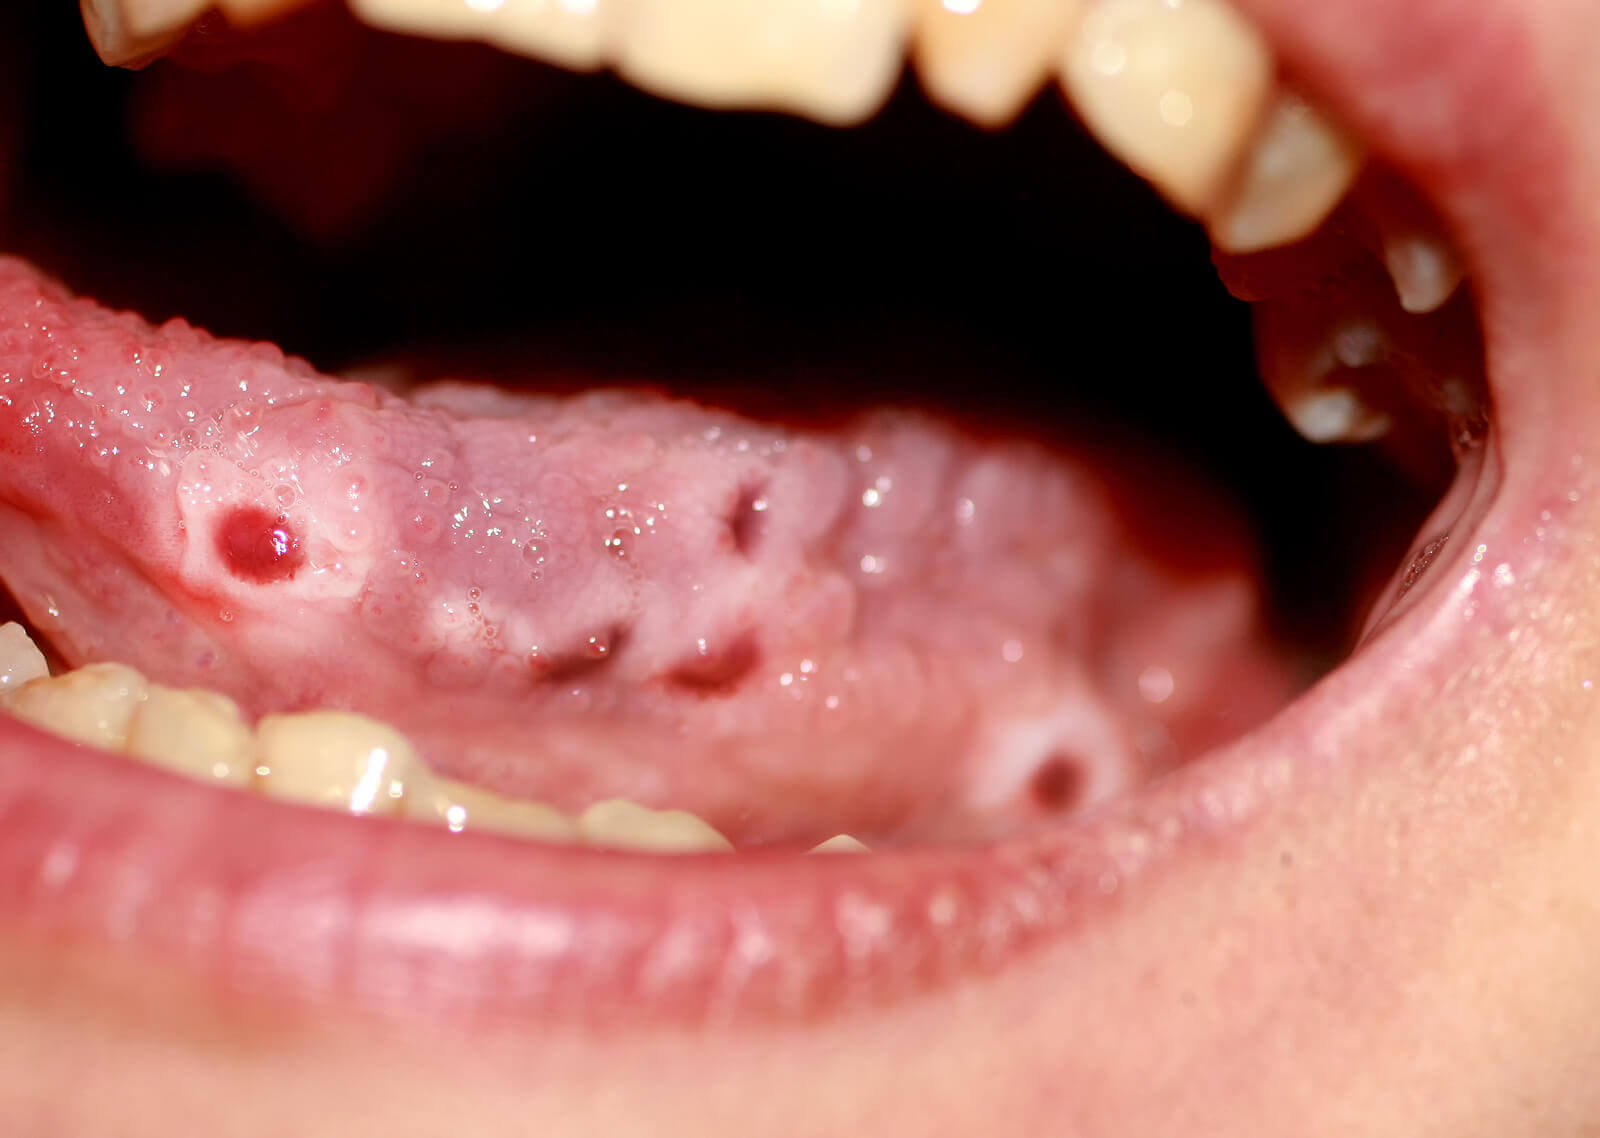 Fieberbläschen auf der Zunge